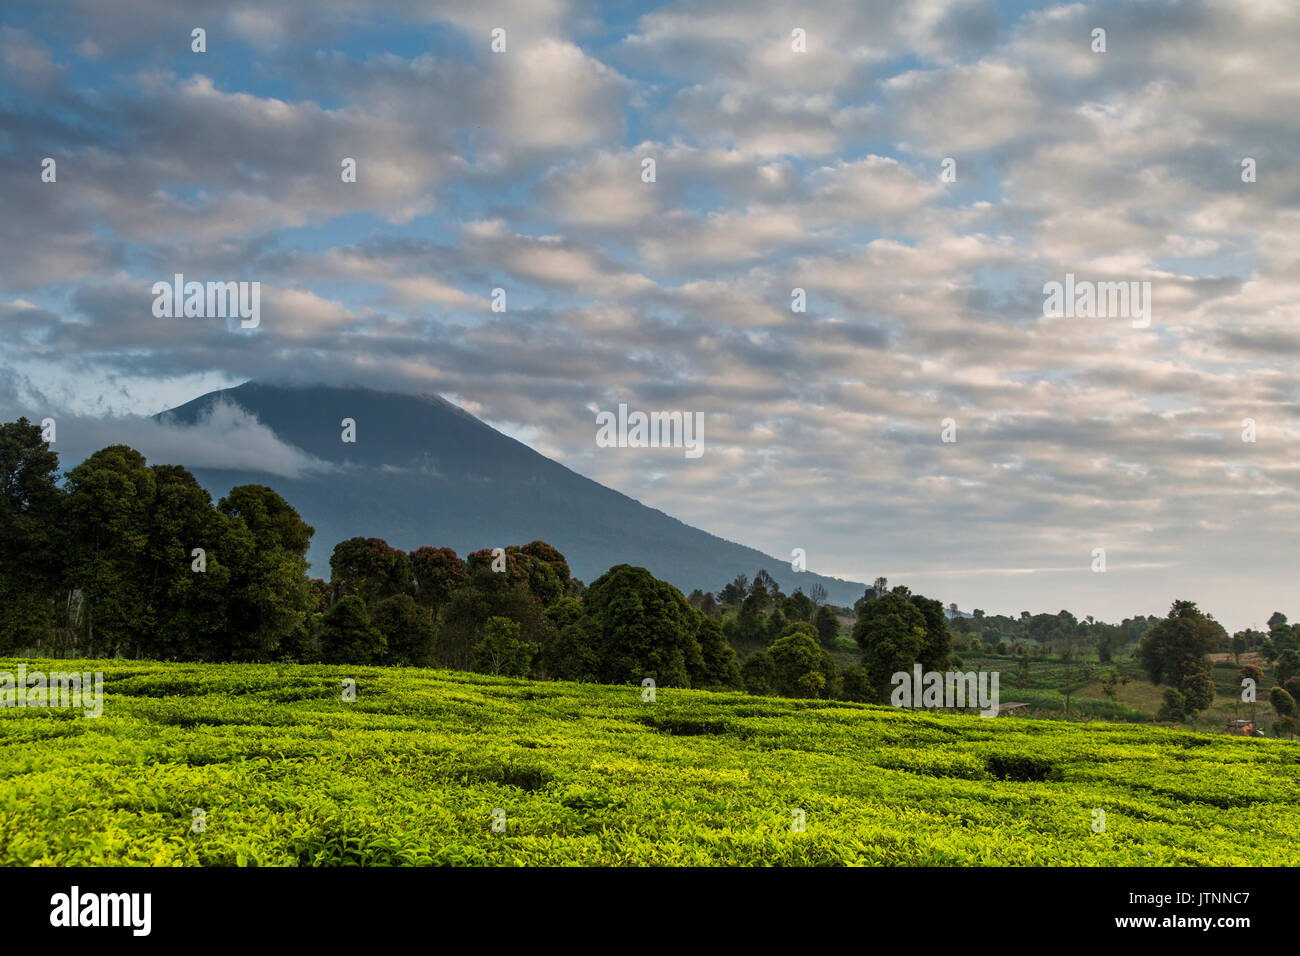 Kaffee Felder, Bäume und Vulkan unter einem blauen Himmel der uneinheitlichen Wolken im kerinci Tal. Kerinci ist eine der produktivsten Kaffee Regionen in der Welt. Kerinci Tal, Sumatra, Indonesien Stockfoto